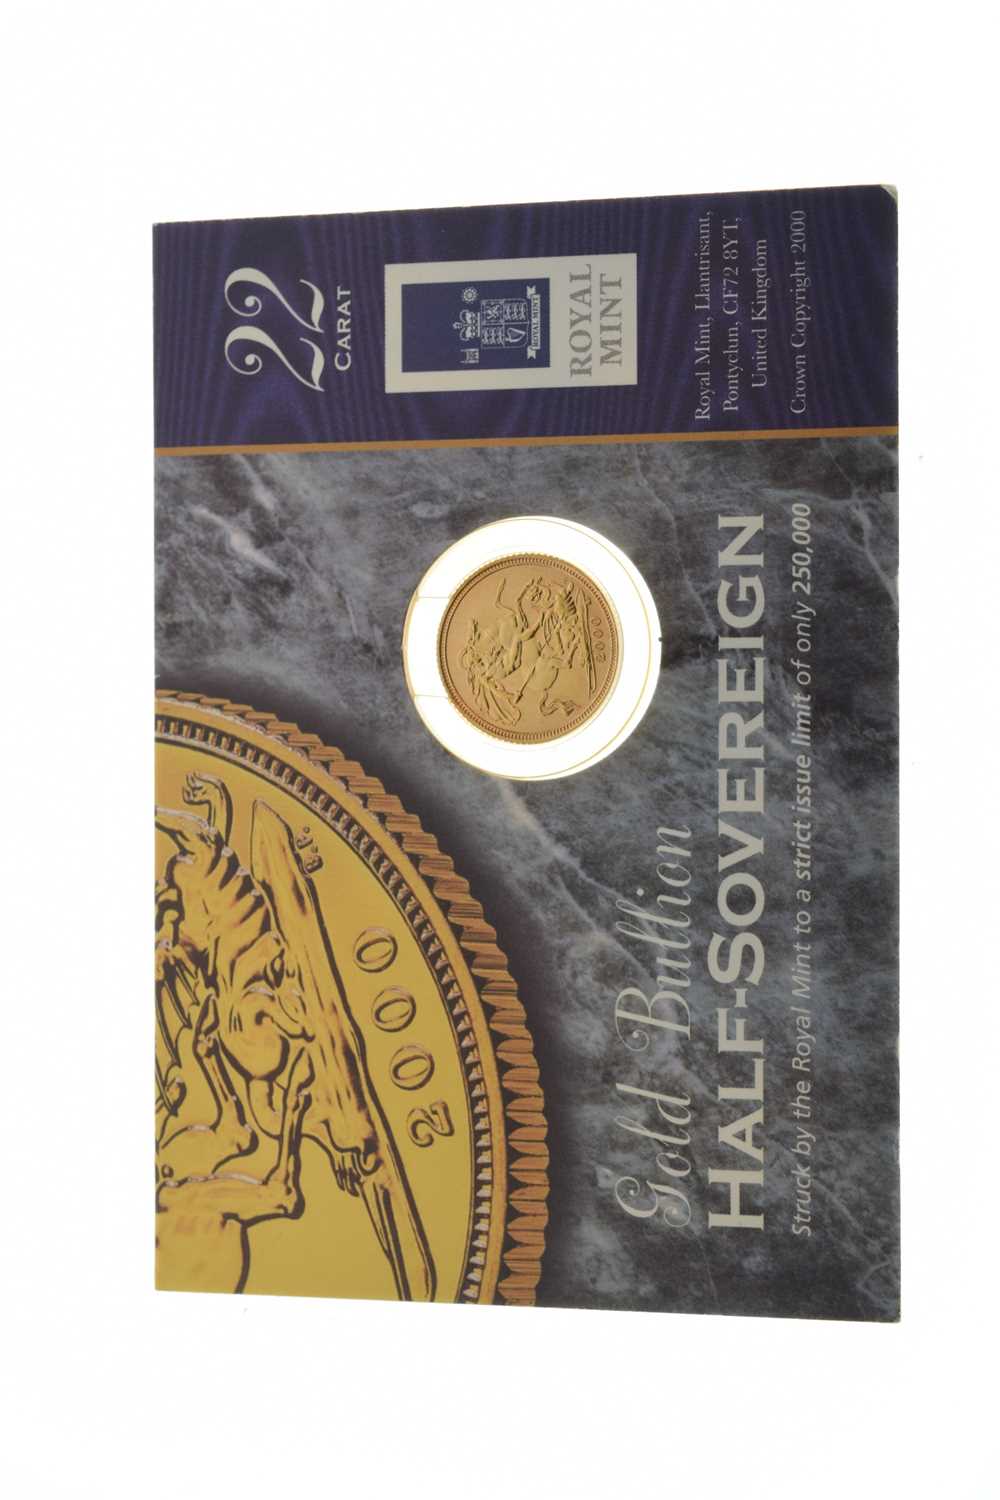 Royal Mint Elizabeth II 2000 gold half sovereign in presentation pack - Image 2 of 5